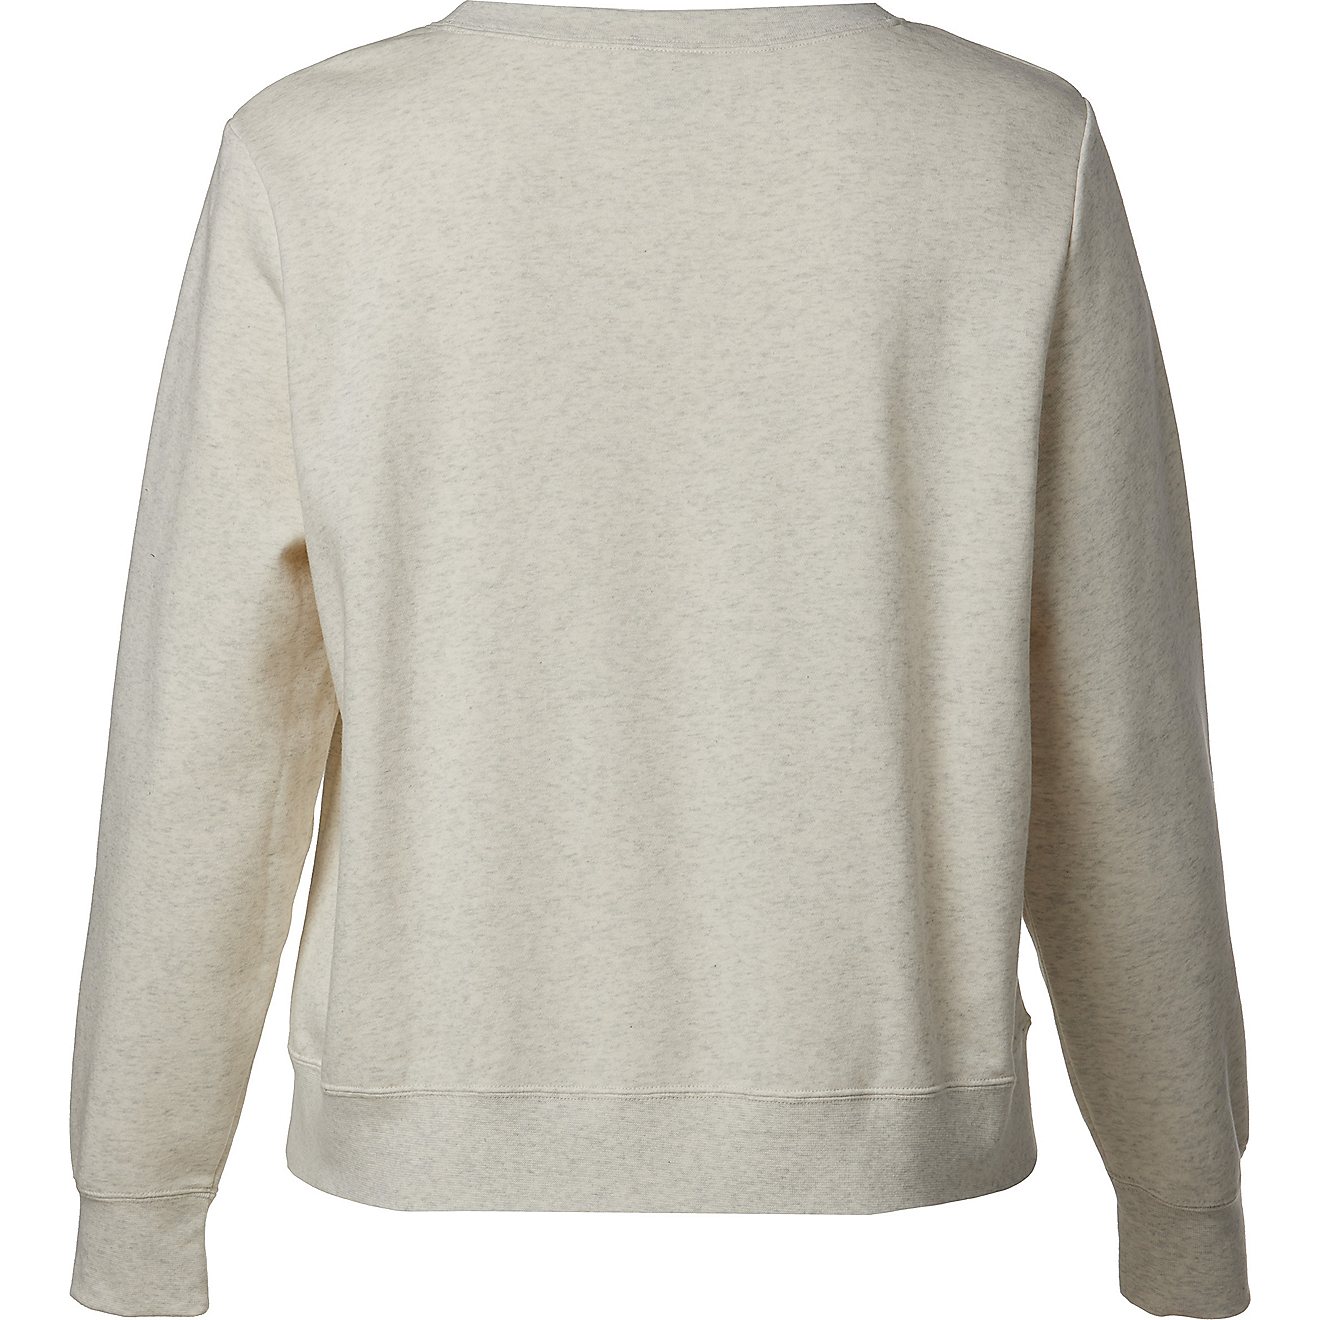 Nike Women's Club Fleece Plus Size Sweatshirt | Academy